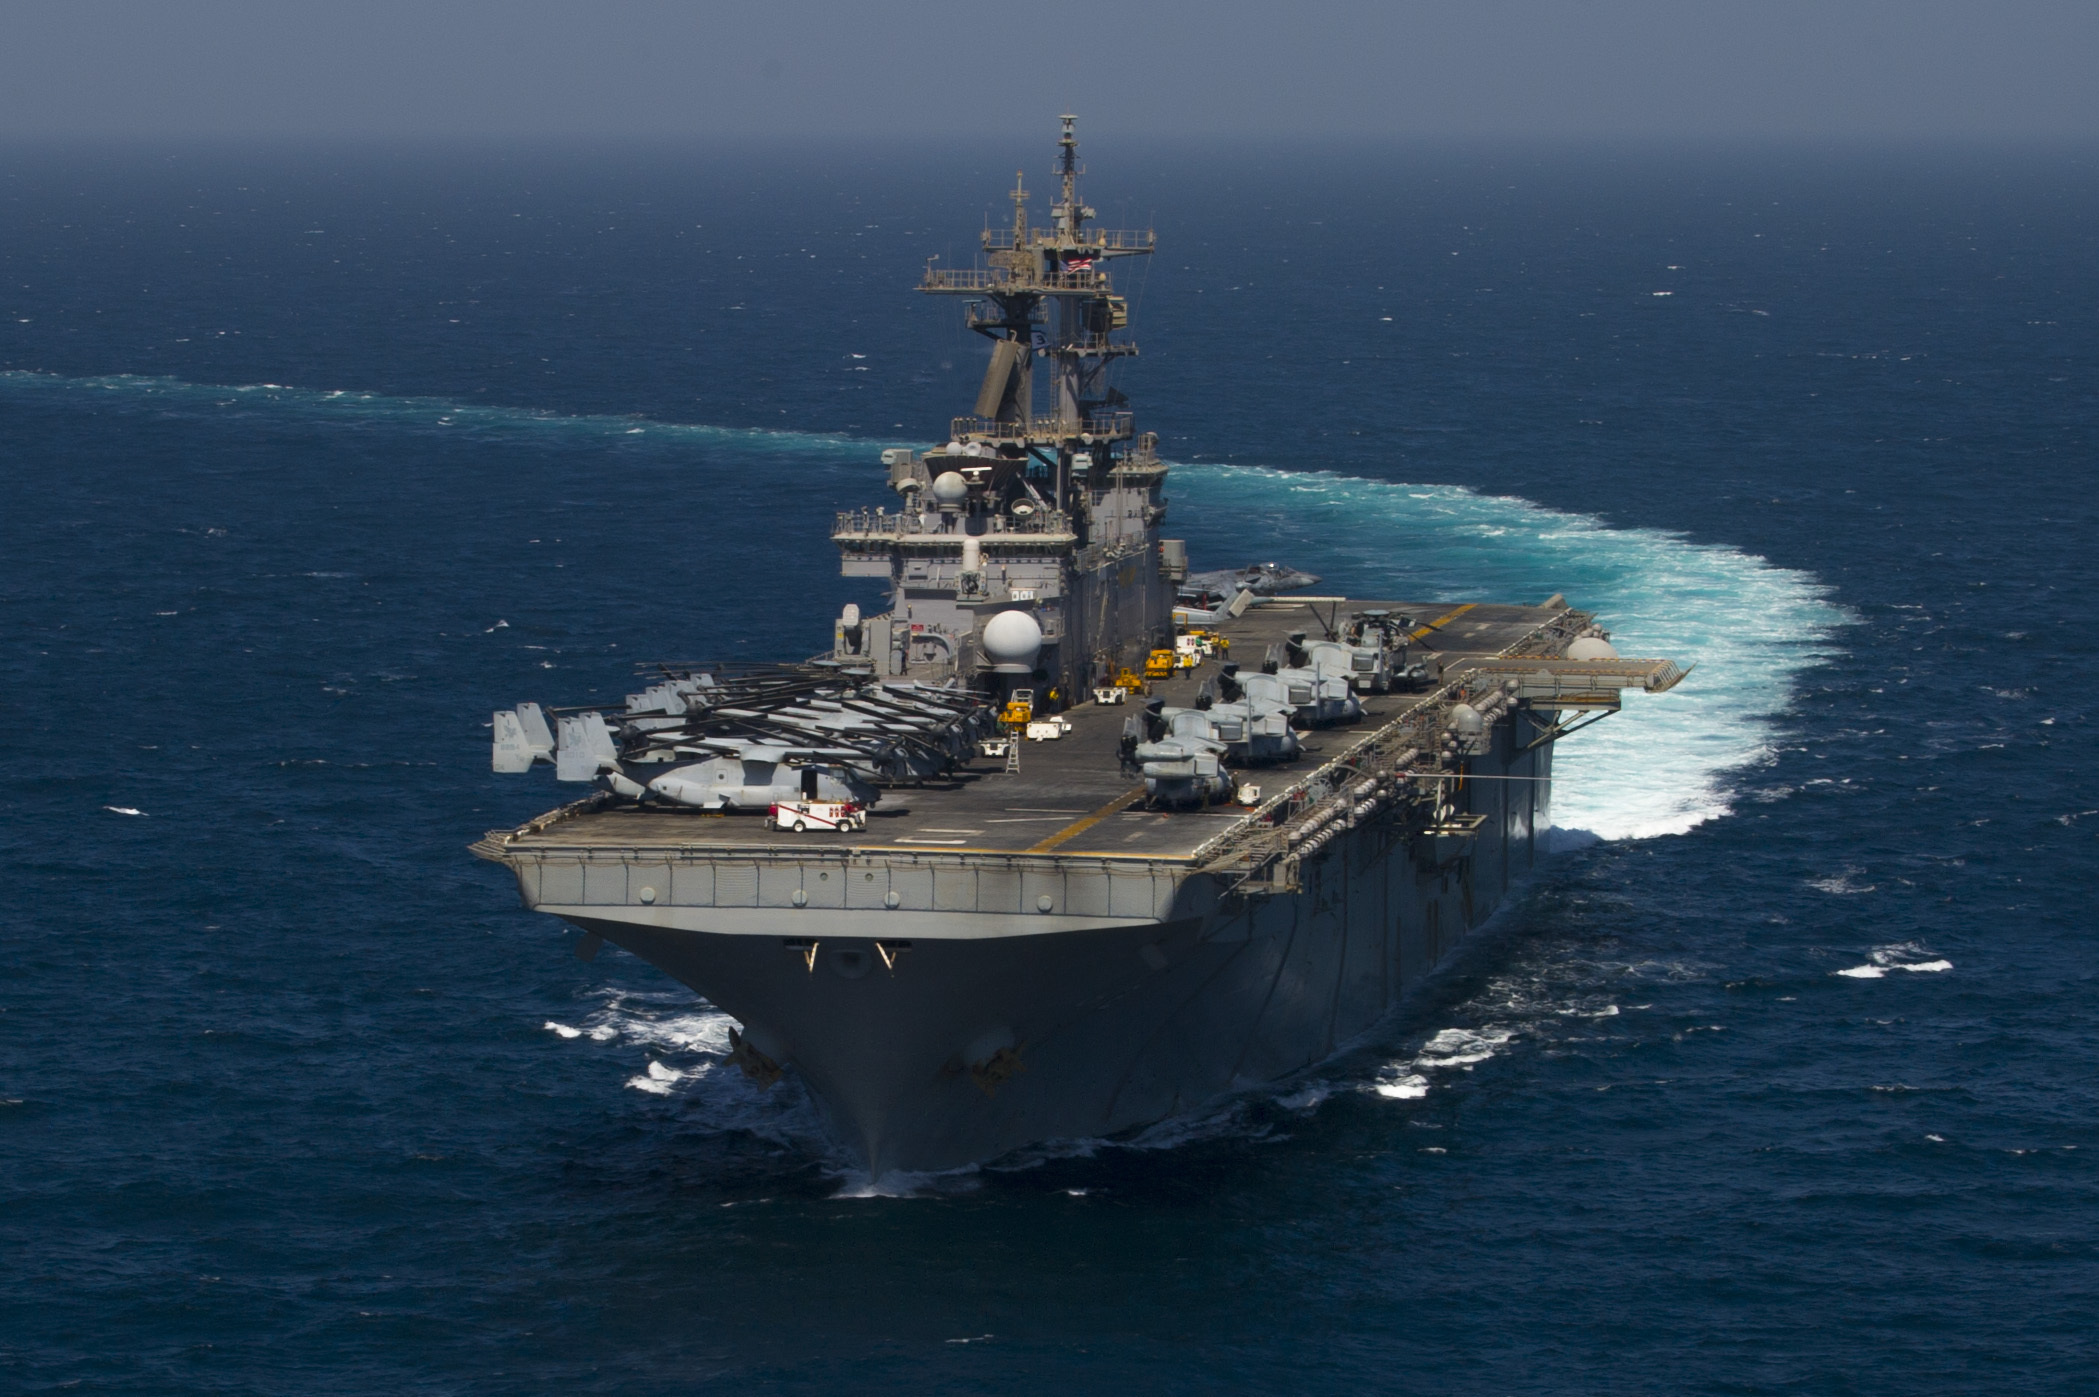 USS ESSEX LHD-2 am 24.09.2015 im Arabischen Meer Bild: U.S. Navy